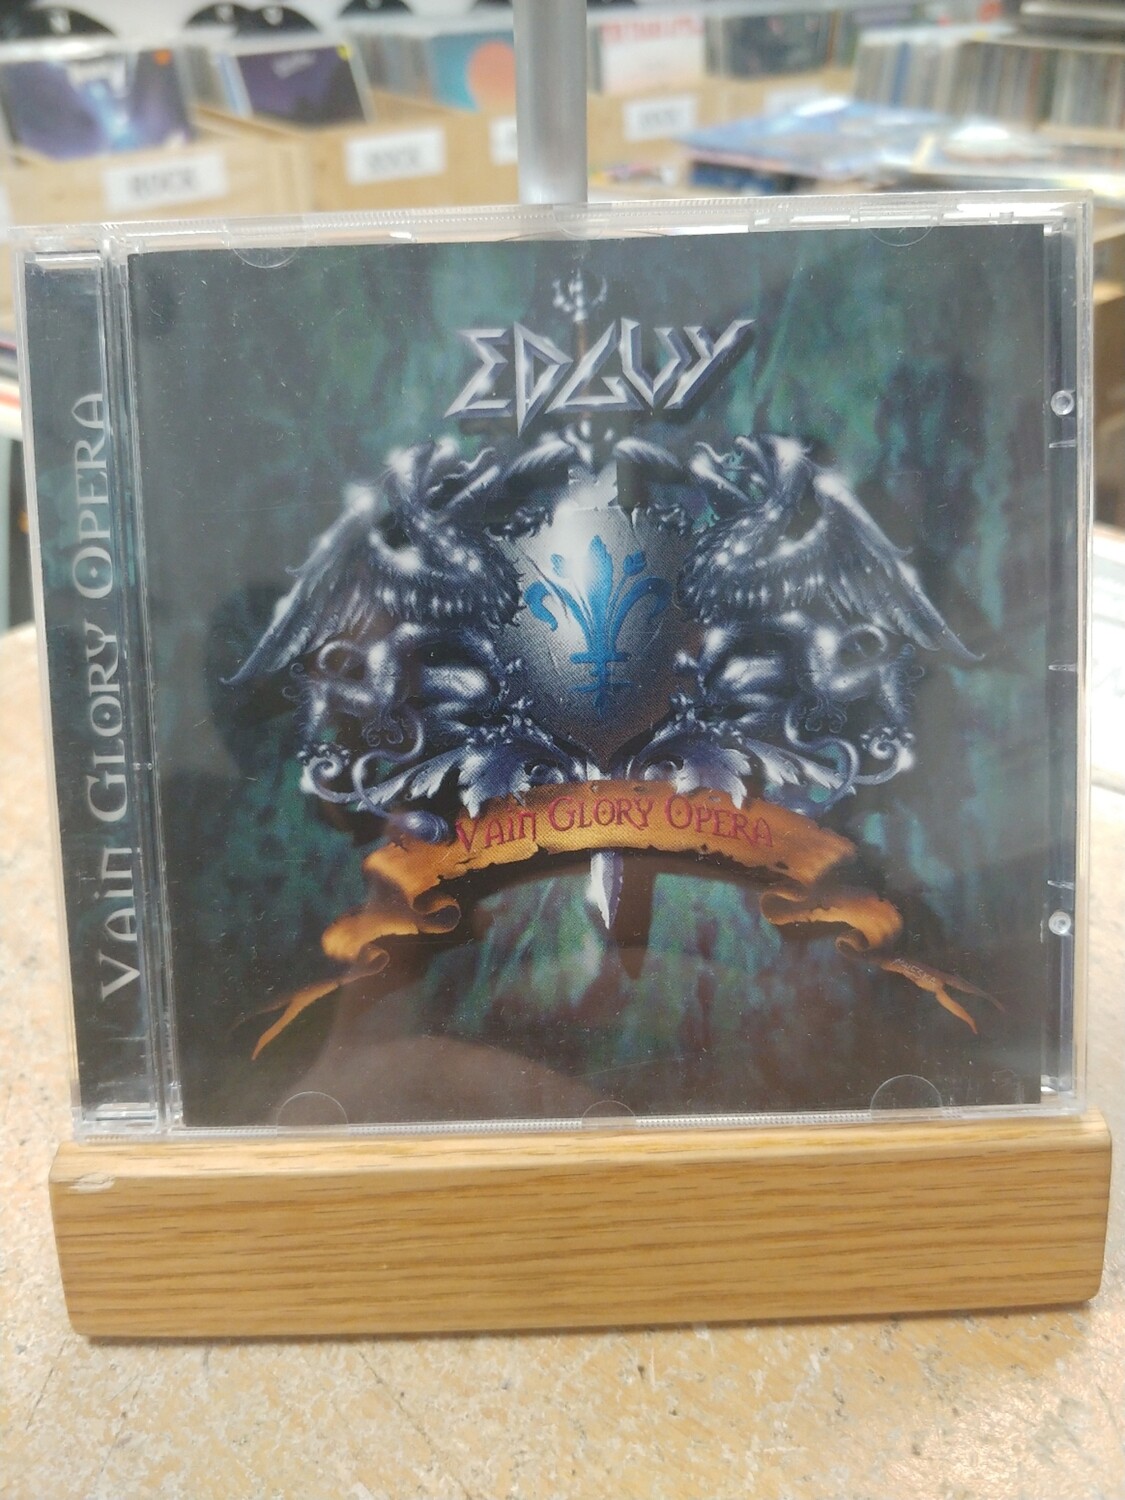 Edguy - Vain Glory Opera (CD)